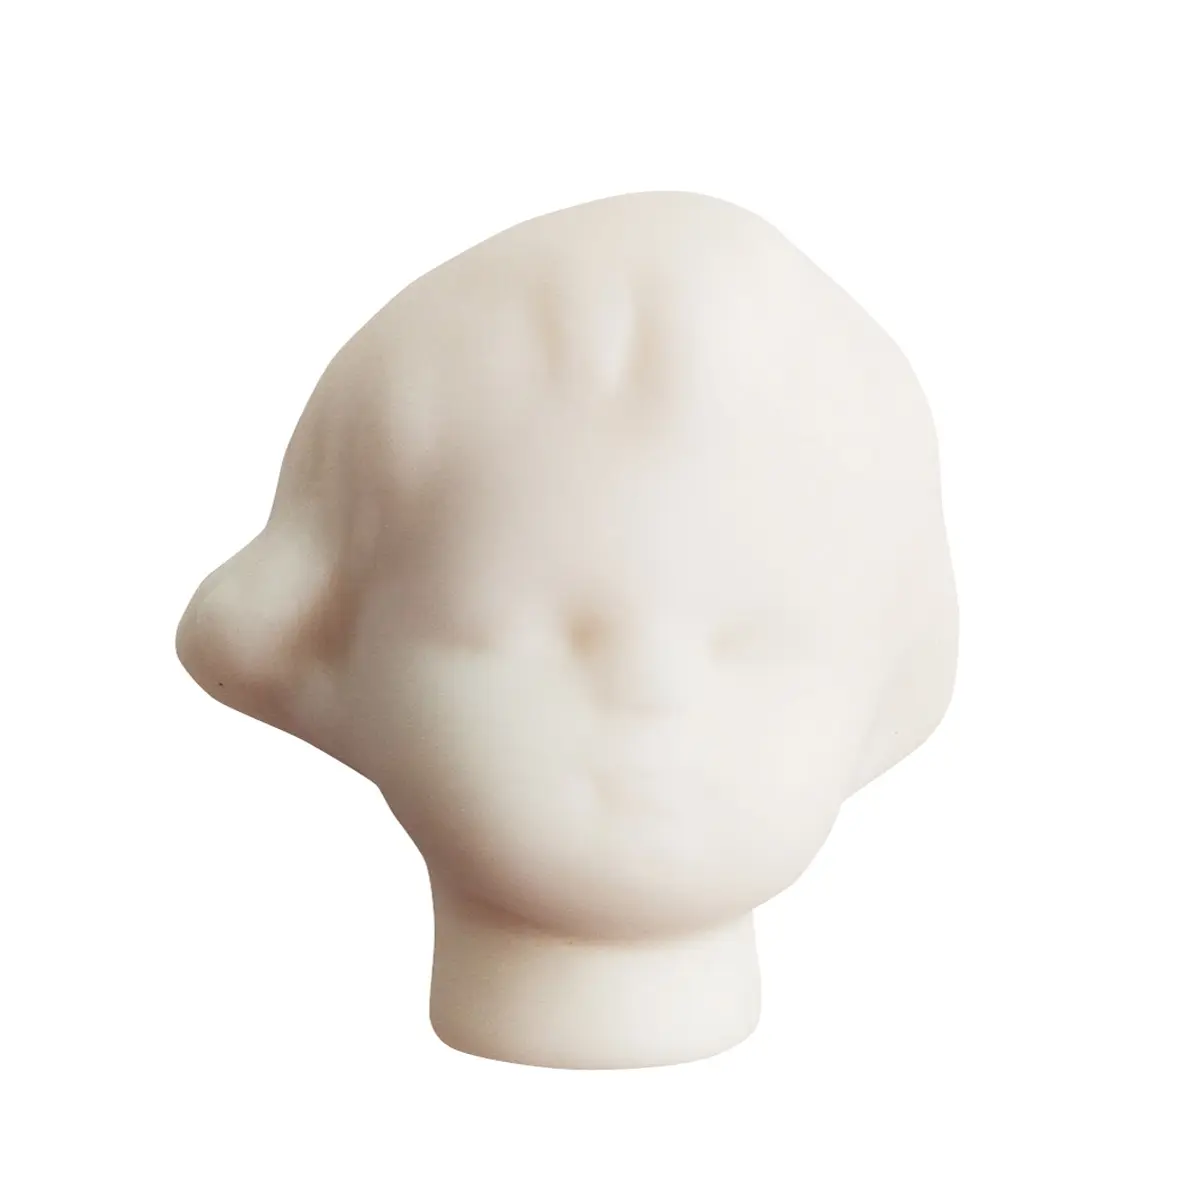 Blanks para bonecas de porcelana (cabeça) 3cm tamanho fabricante preços boneca artesanal peças